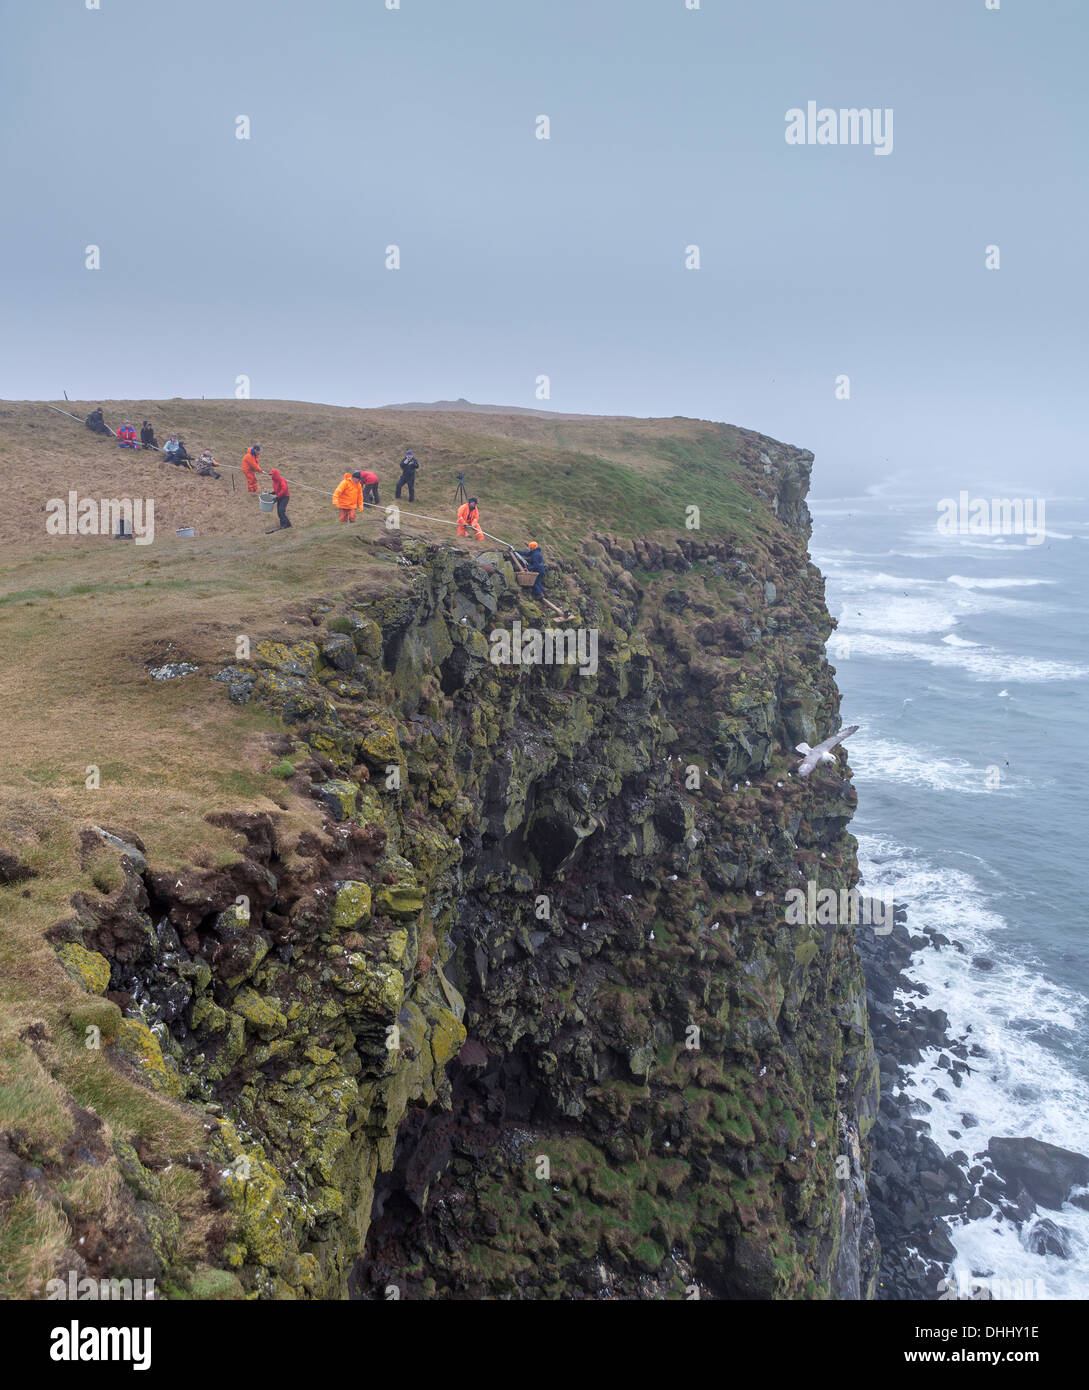 Sammeln von gemeinsamen Guillemot Eiern (Uria Aalge), Ingolfshofdi, Island Teamwork Bemühung durch Seil, Eiern auf den Klippen zu sammeln. Stockfoto